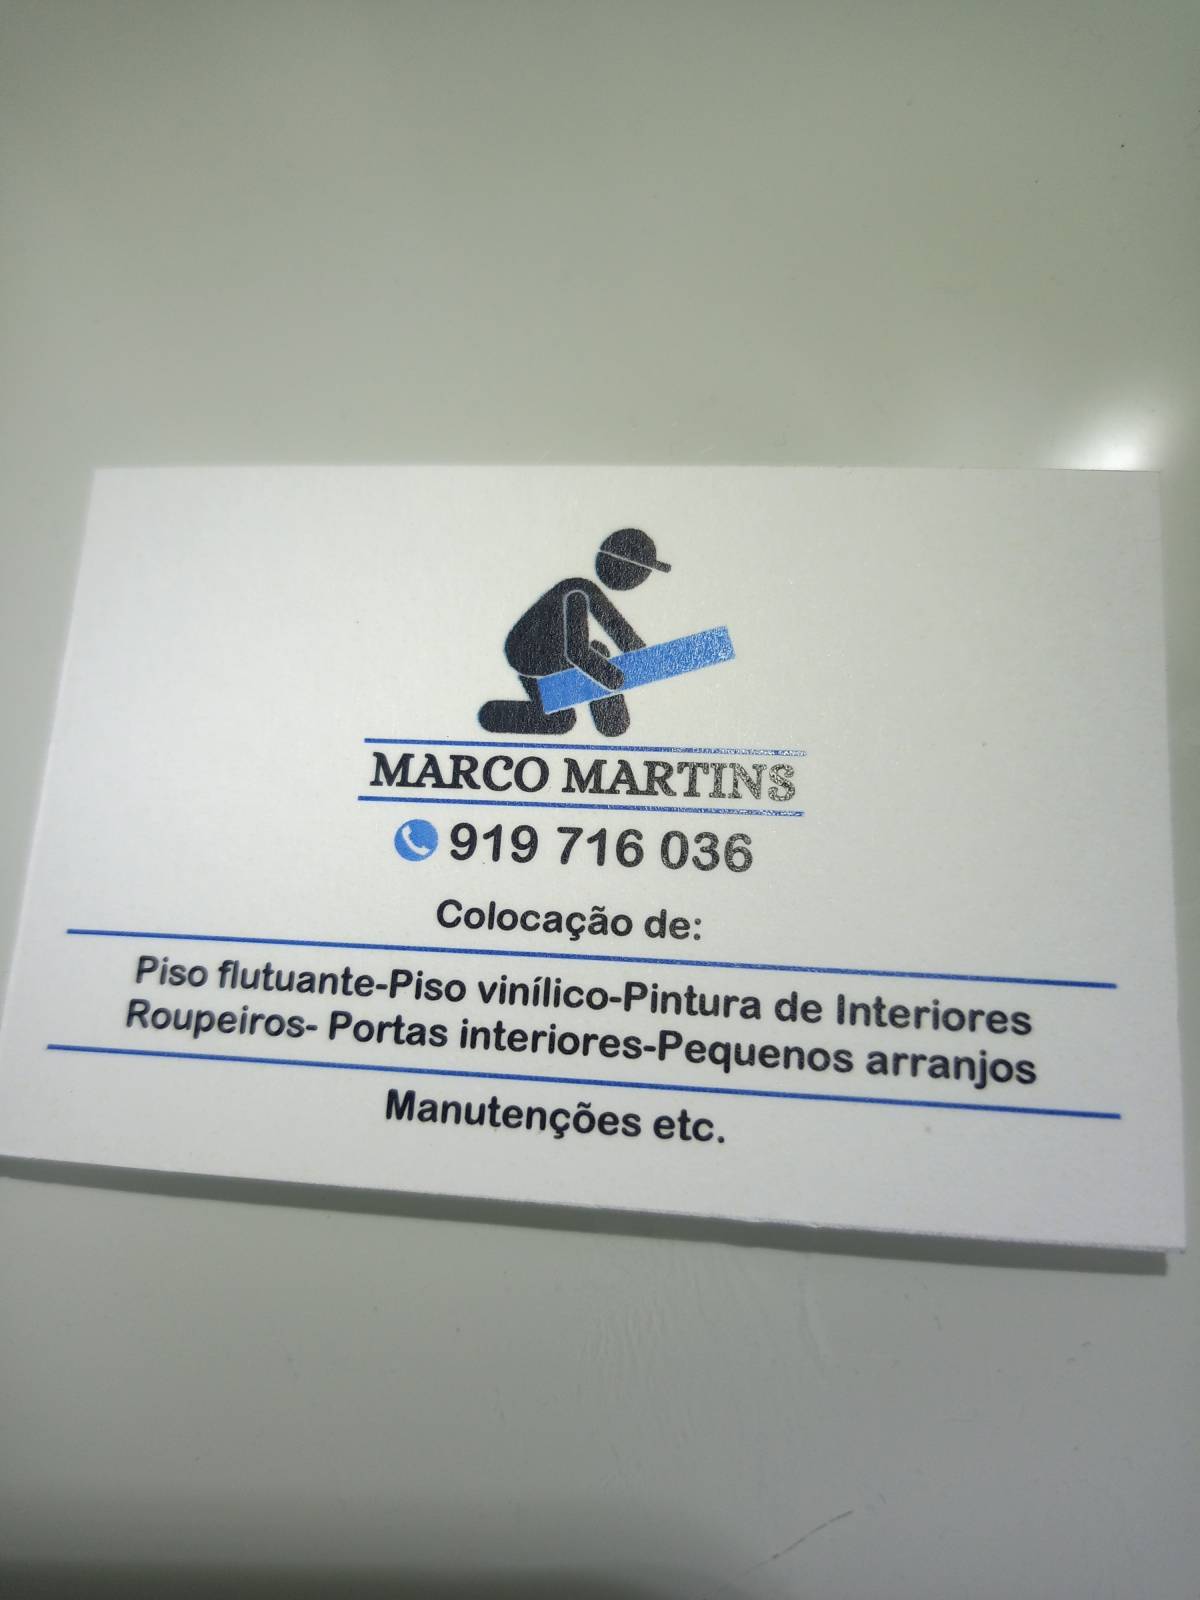 Marco Martins - Vila Nova de Famalicão - Remodelação de Armários